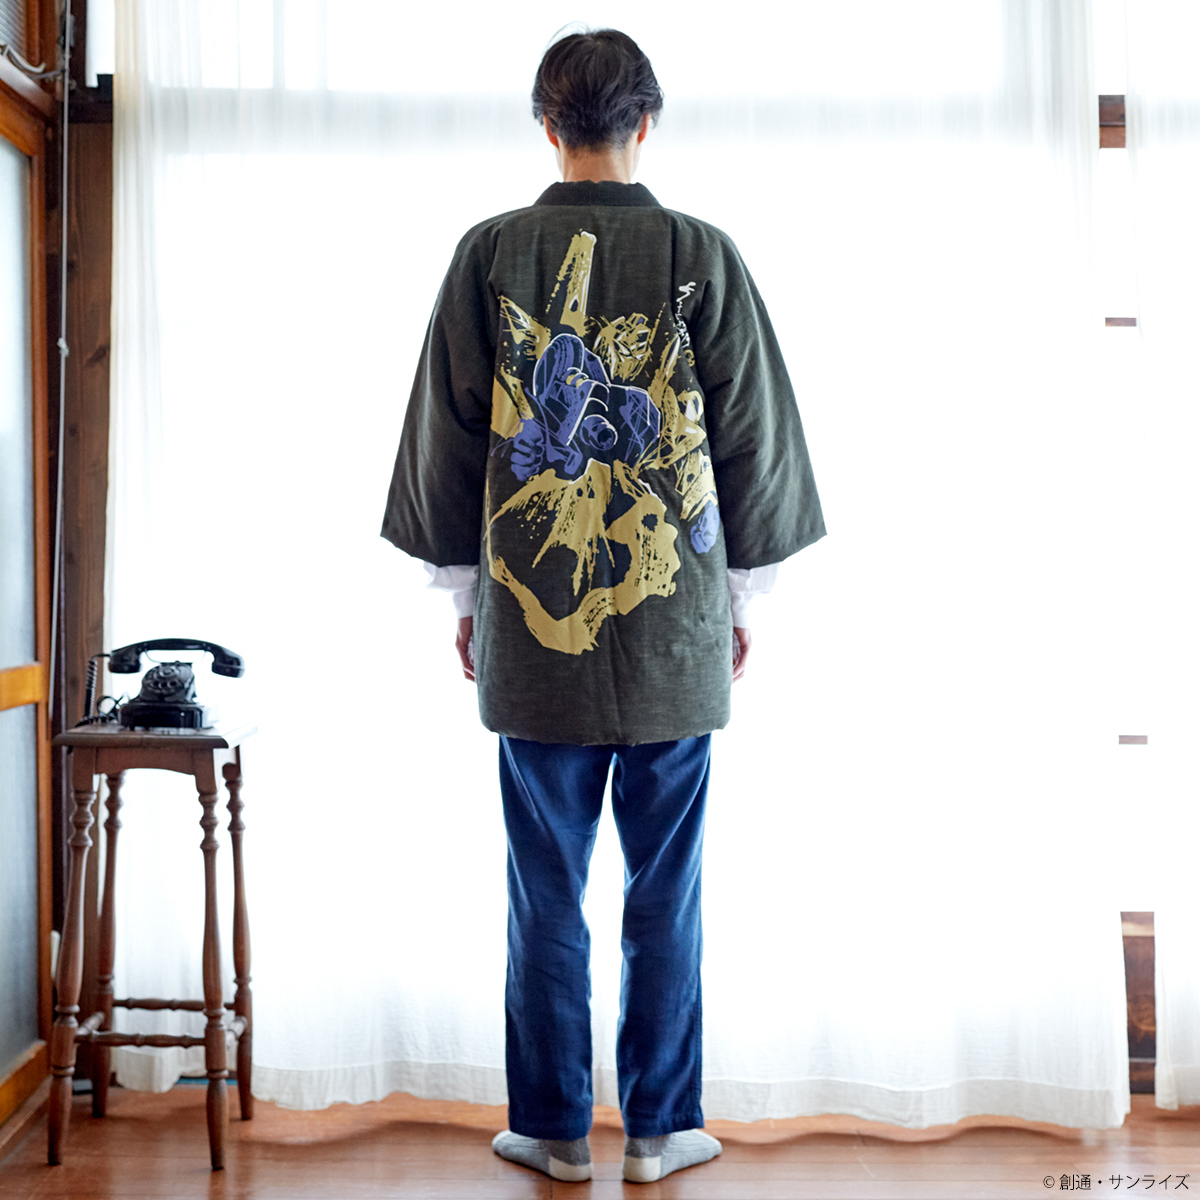 『機動戦士Zガンダム』より、1913年創業の老舗メーカー宮田織物とのコラボによる、「わた入れはんてん」が登場!